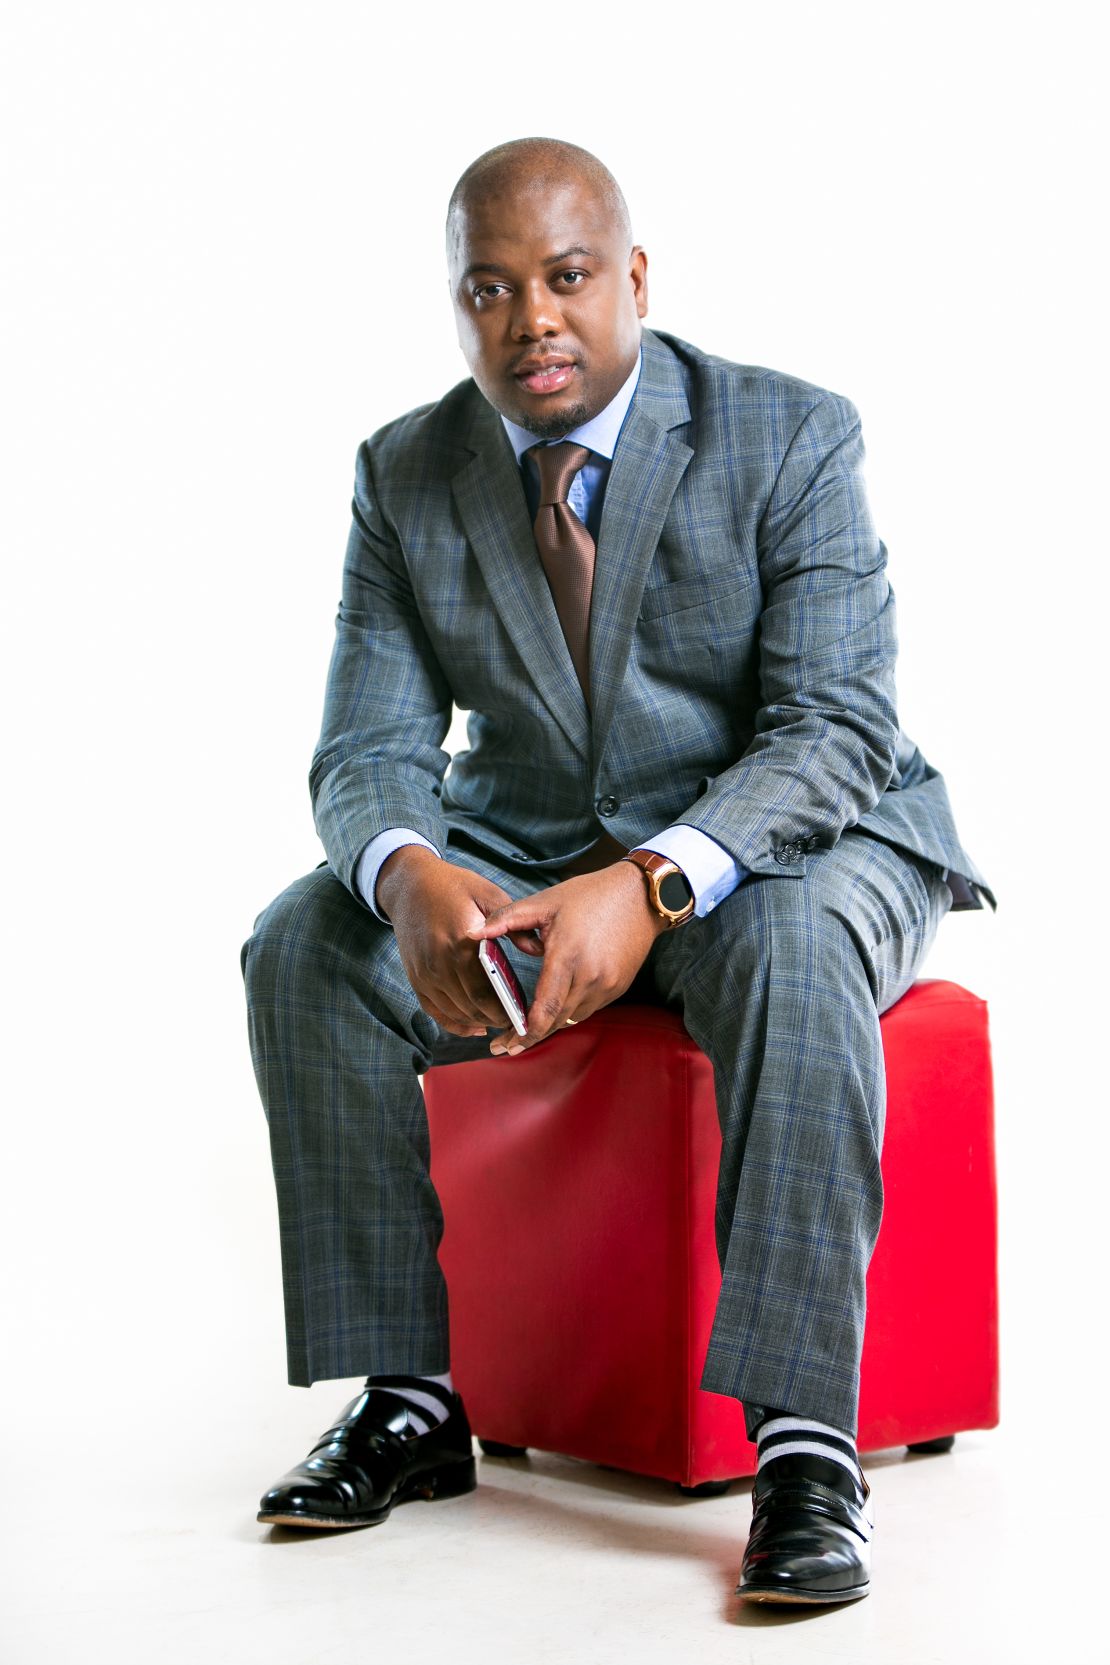 Astro Mobile founder, Munyaradzi Gwatidzo